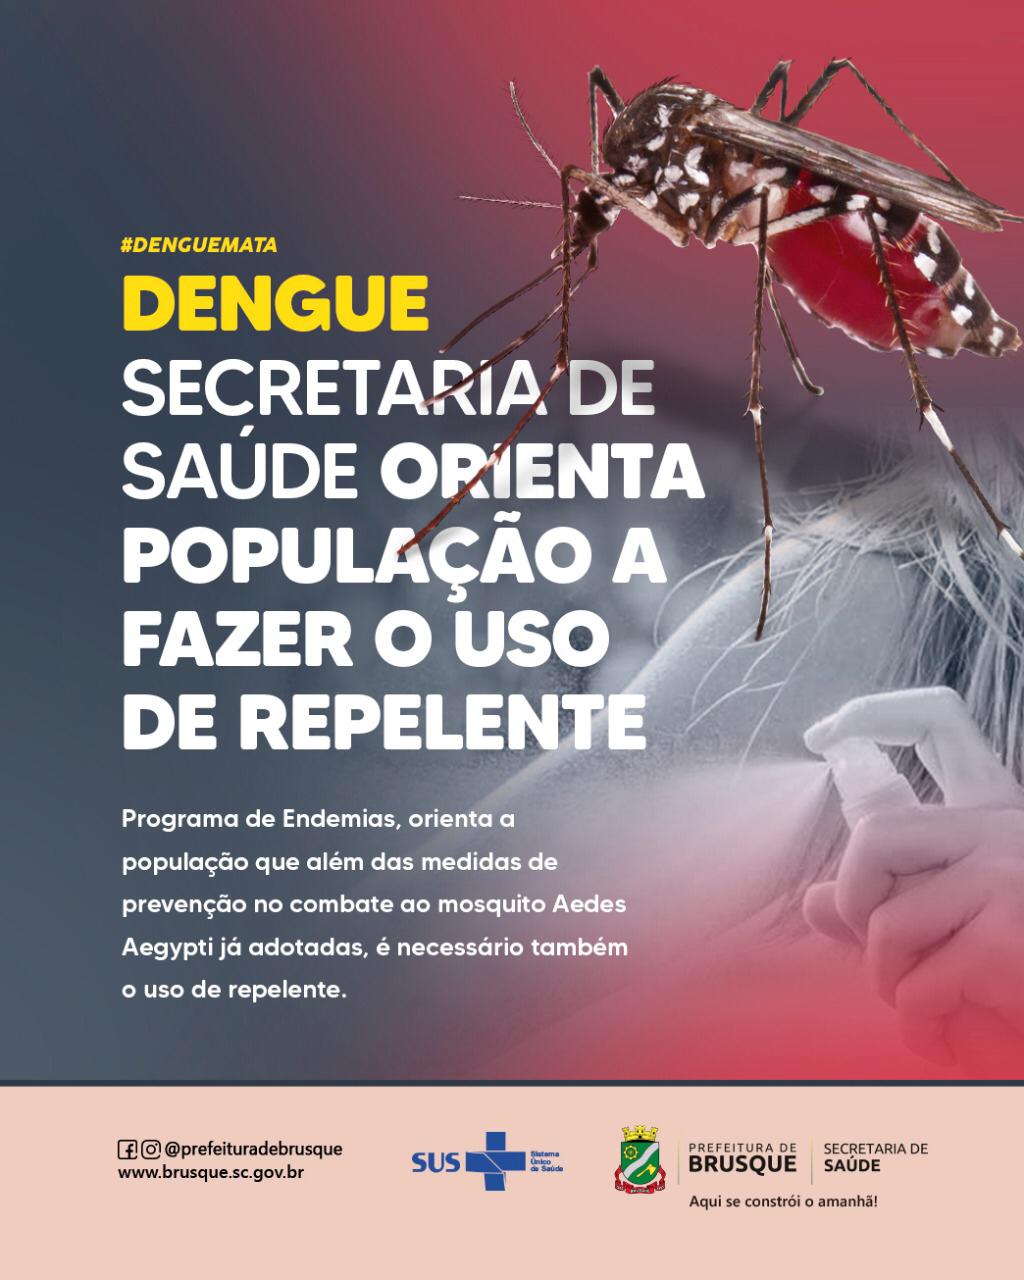 Dengue: Secretaria de Saúde orienta população a fazer o uso de repelente